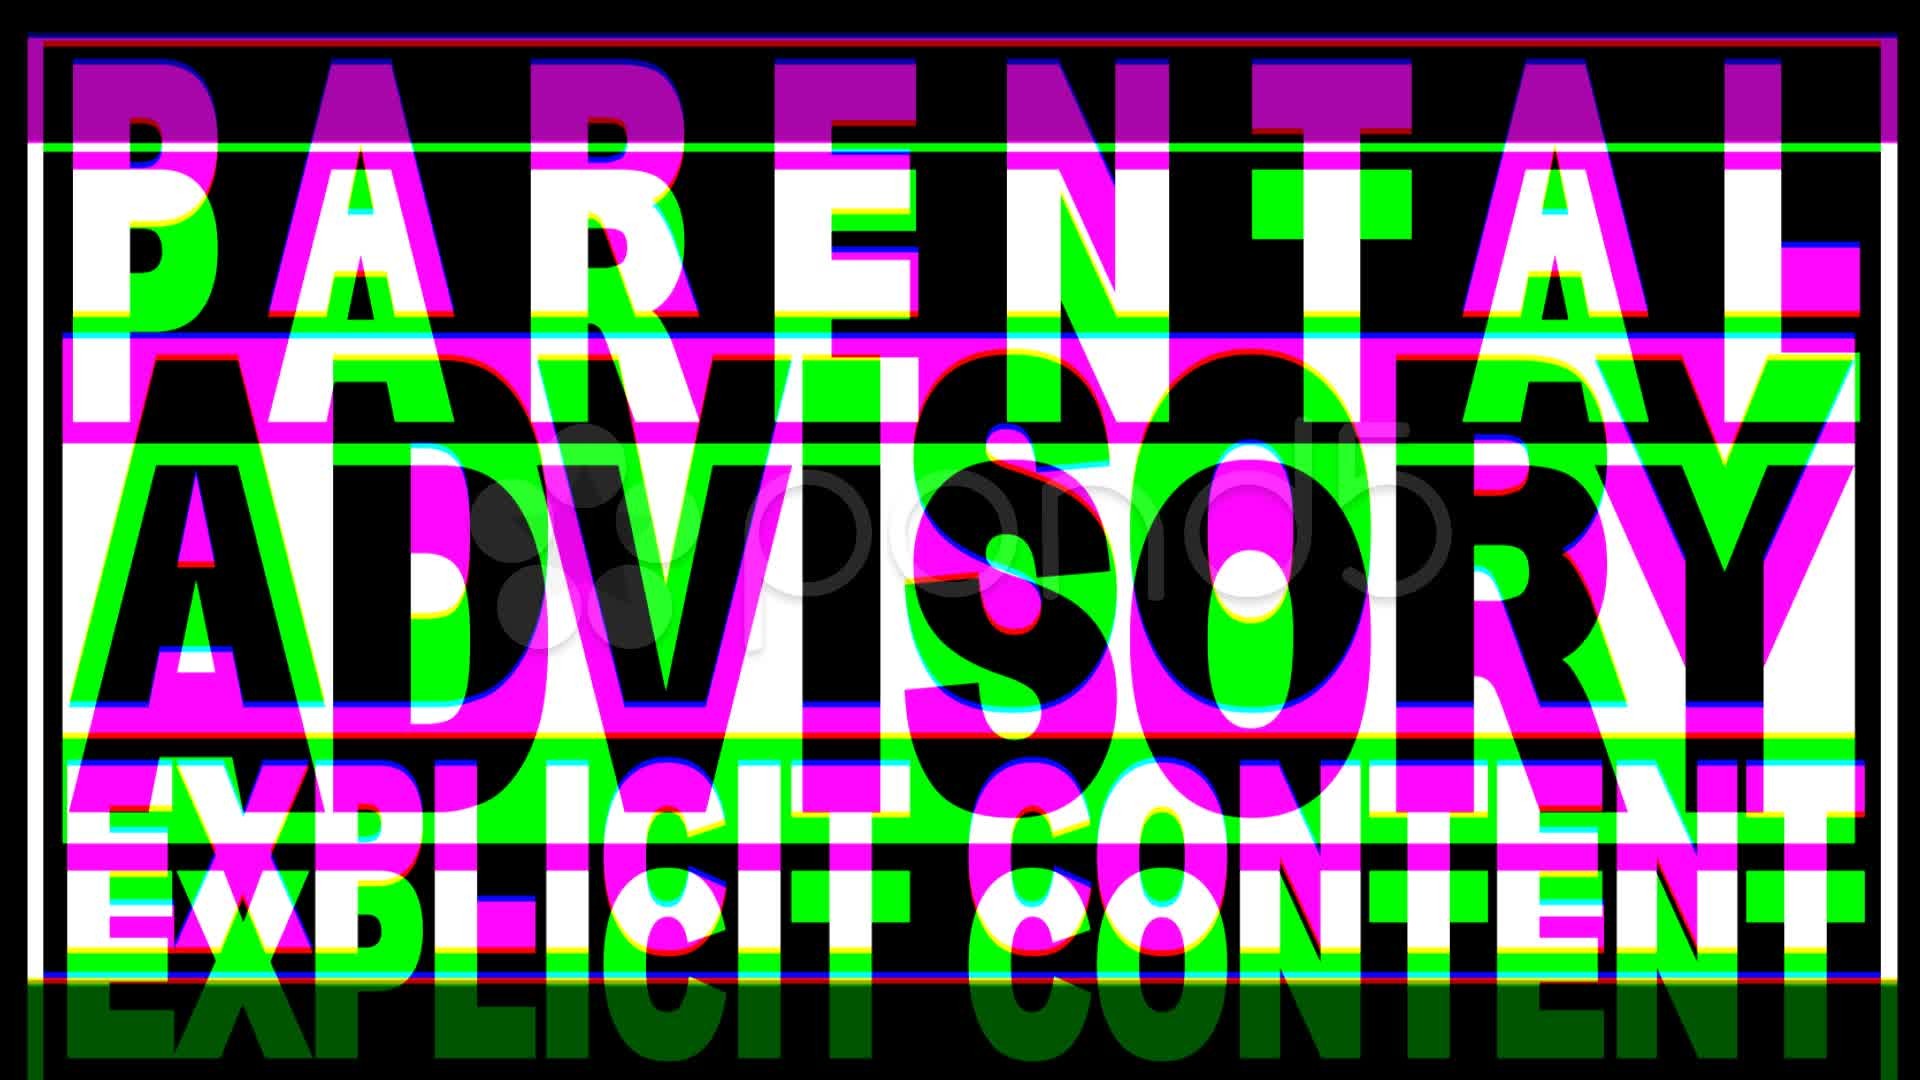 Parental advisory explicit content обои